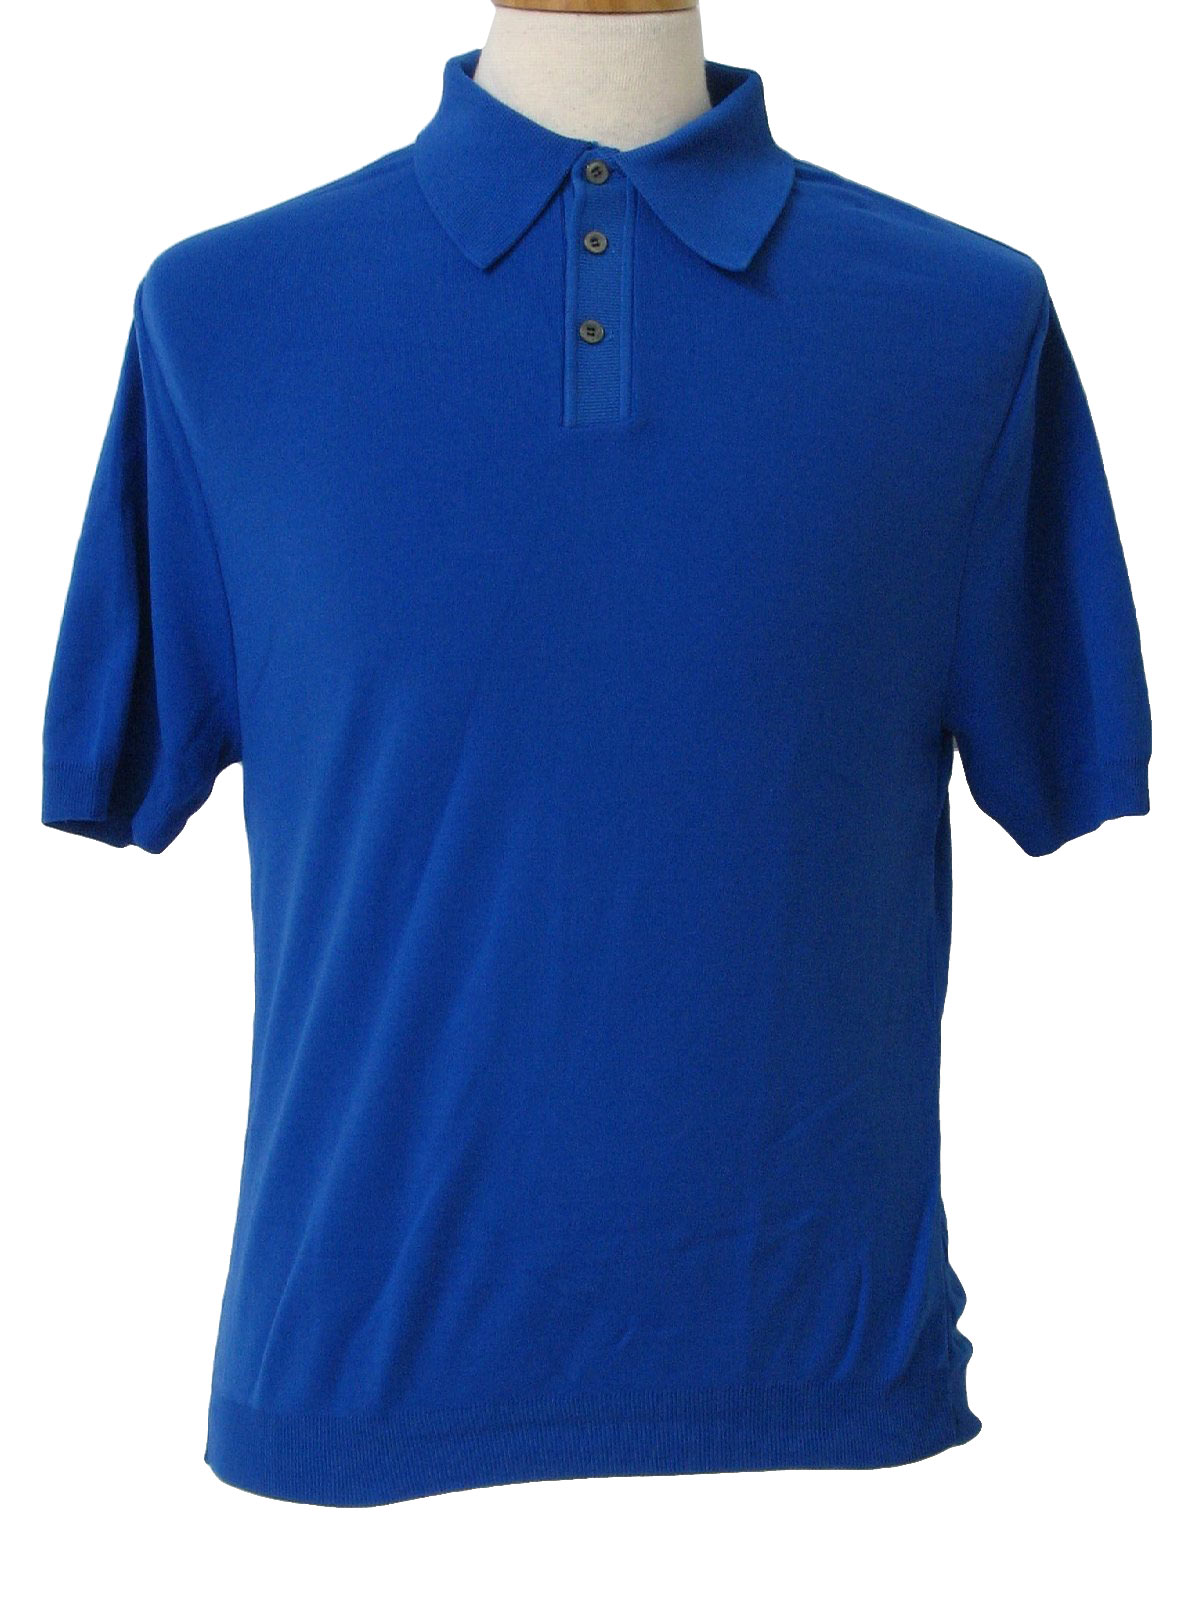 Retro 1970s Shirt: 70s -Jaclee- Mens royal blue nylon banlon short ...